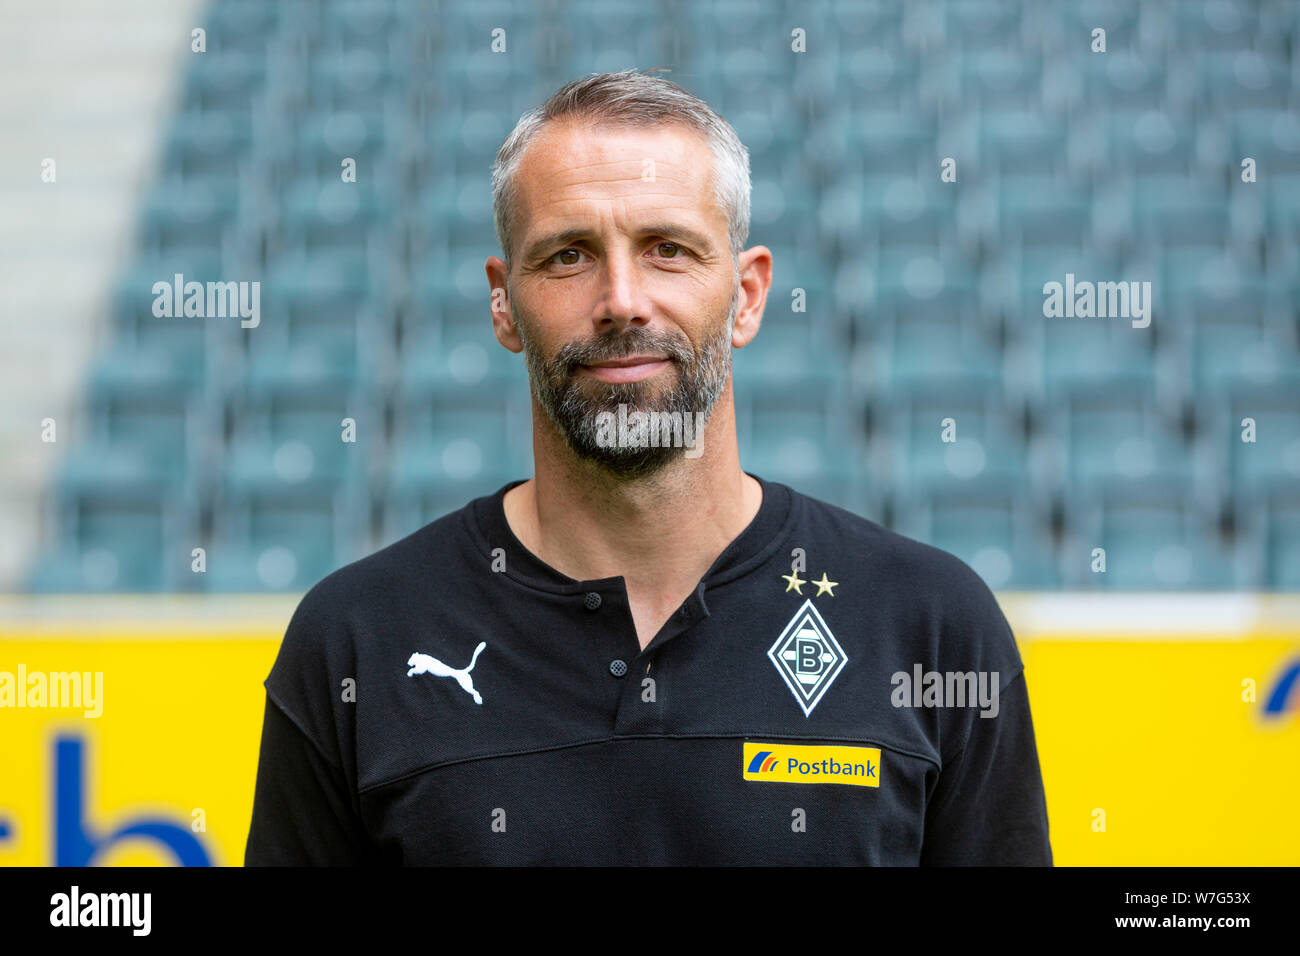 Calcio, Bundesliga, 2019/2020, Borussia Moenchengladbach, premere il tasto di ripresa fotografica, ritratto, head coach Marco ROSE Foto Stock